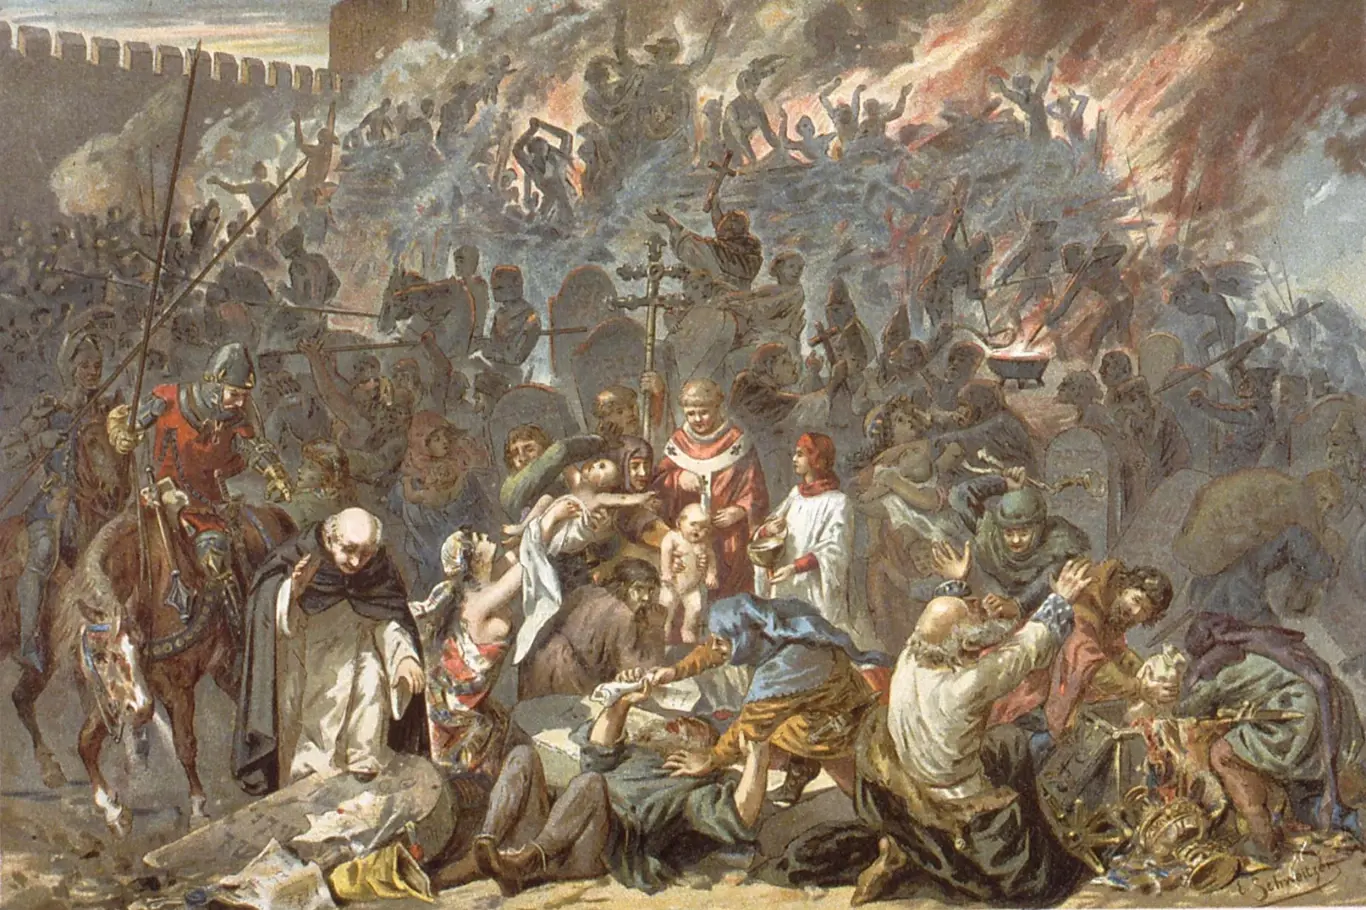 Středověký pogrom (na obraze je zachyceno vyvraždění Židů ve Štrasburku v roce 1349)